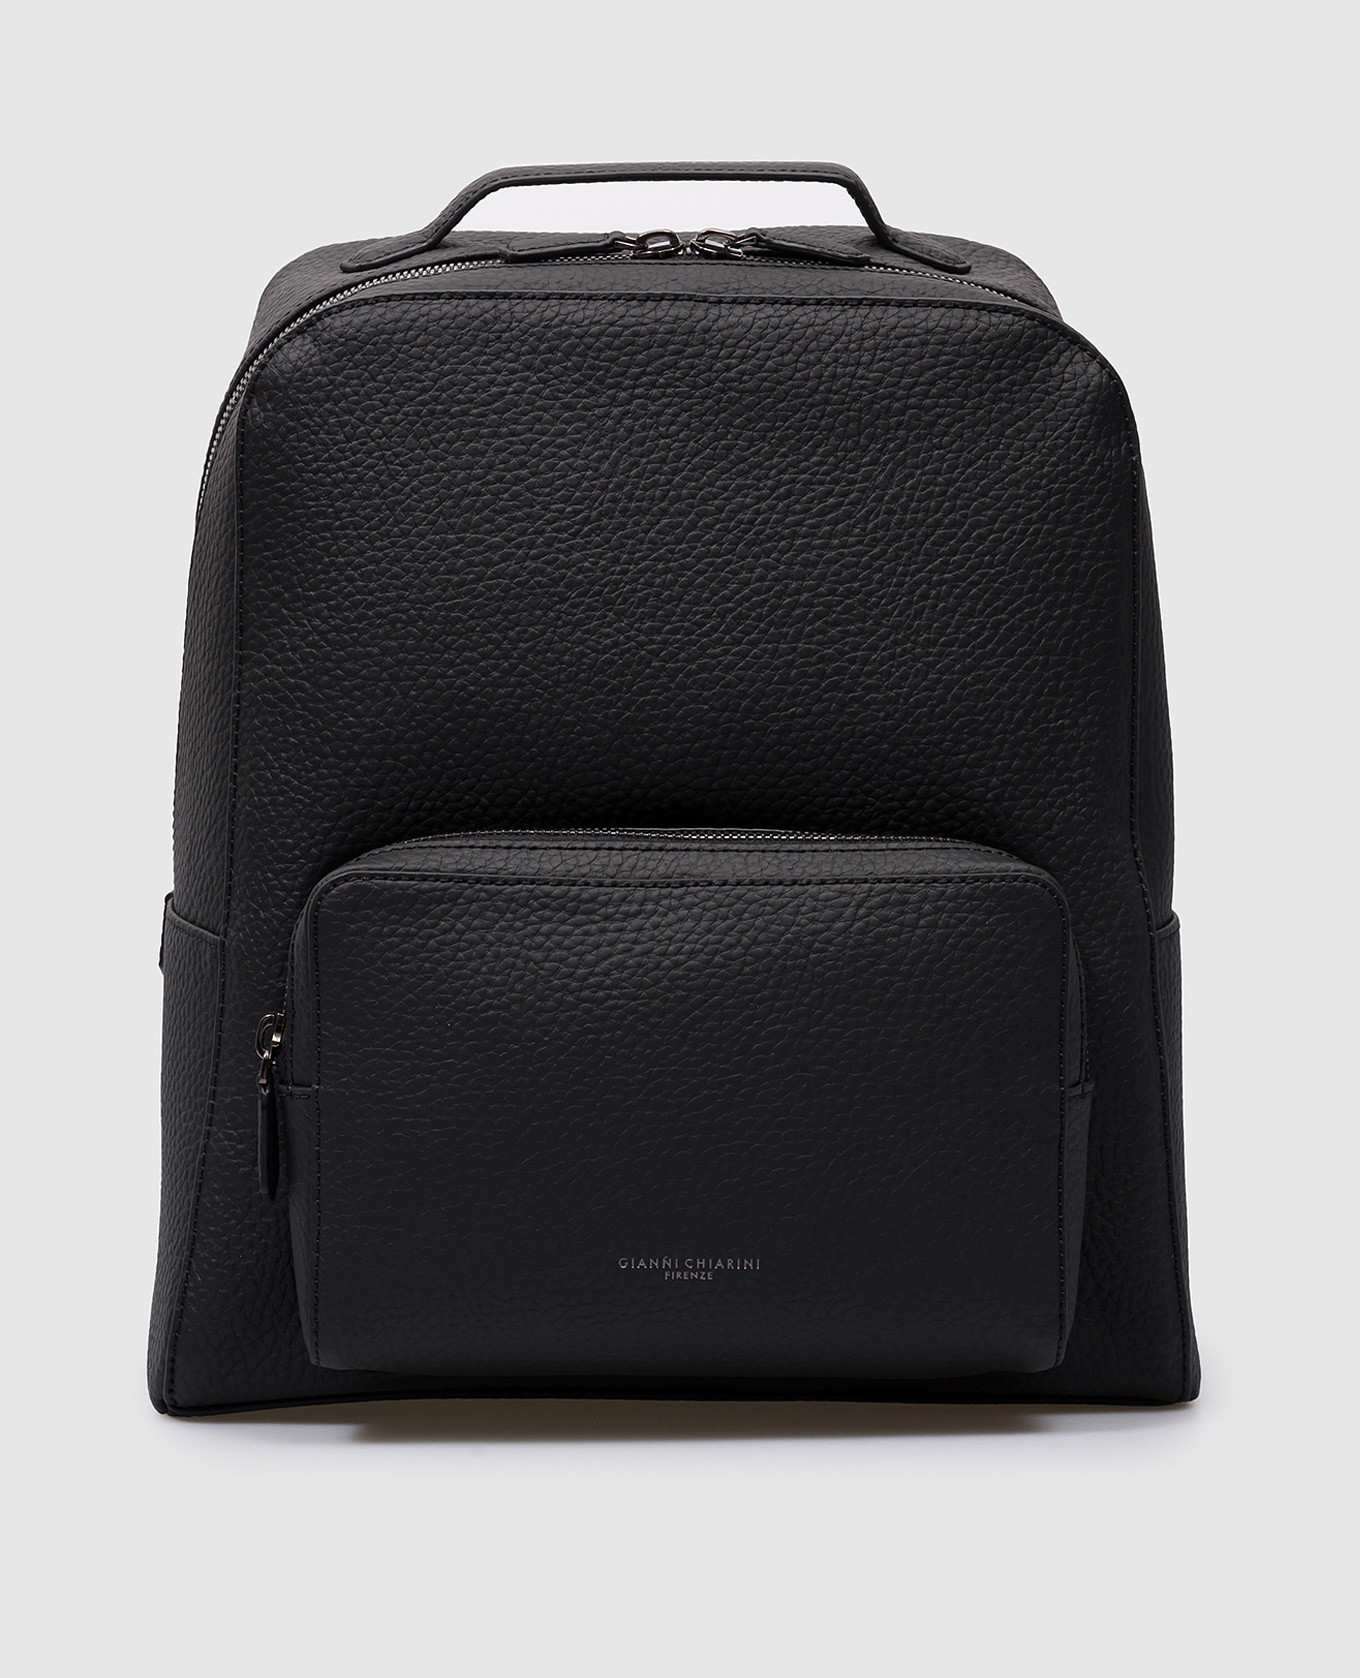 Черный кожаный рюкзак с принтом логотипа.